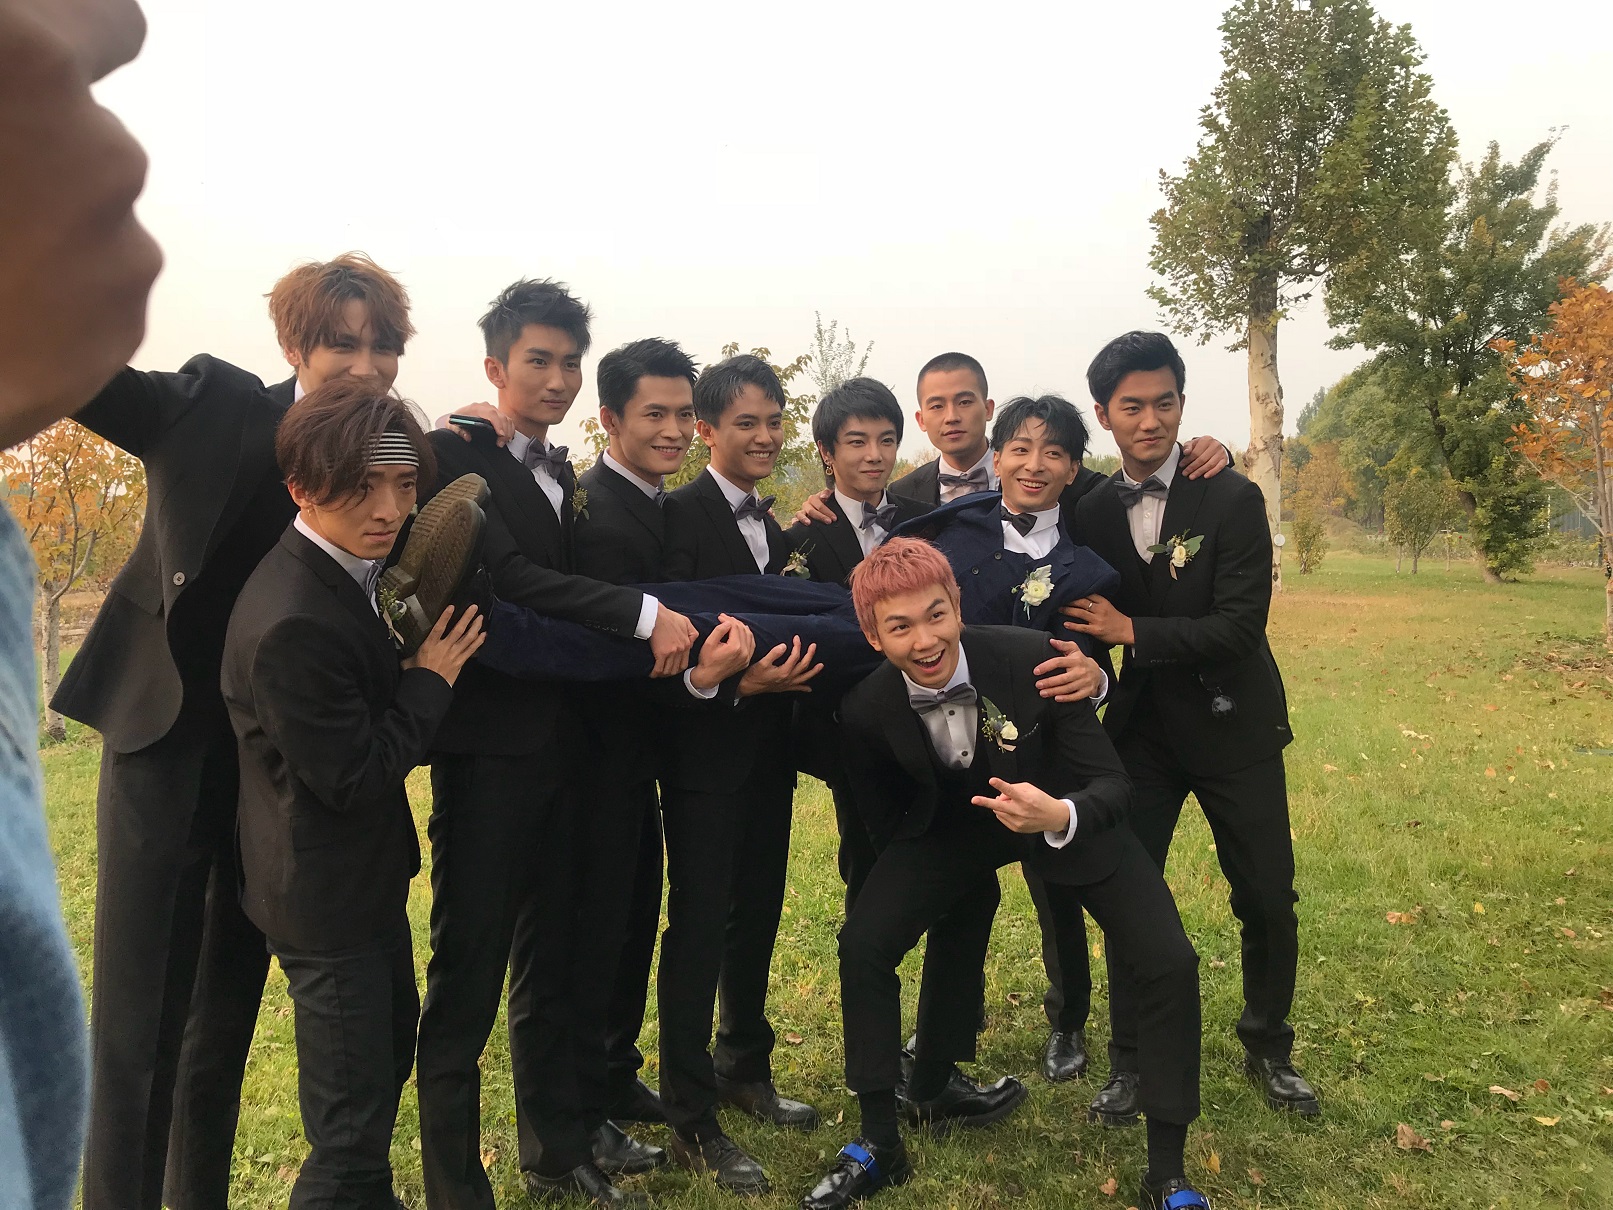 Zuo Li’s wedding